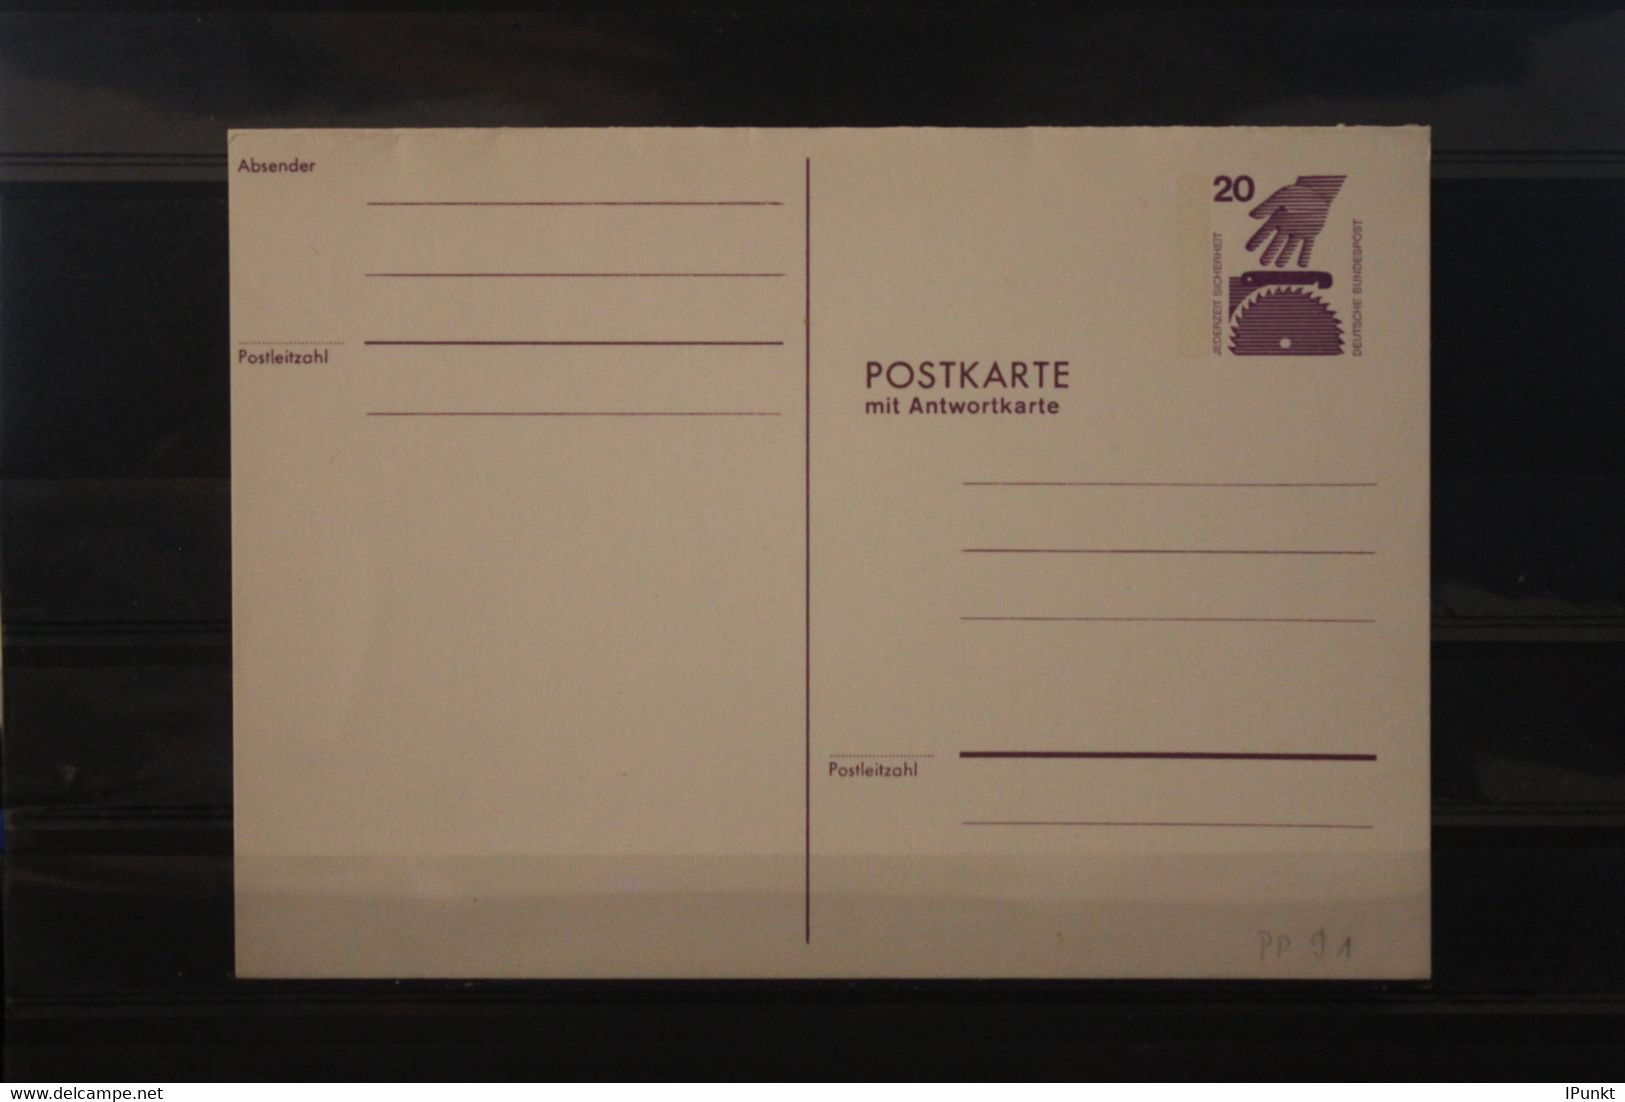 Deutschland 1974, Postkarte Wertstempel Unfallverhütung, 20 Pf., PP 91, Kompl. Druck Lila, Ungebraucht - Private Postcards - Mint